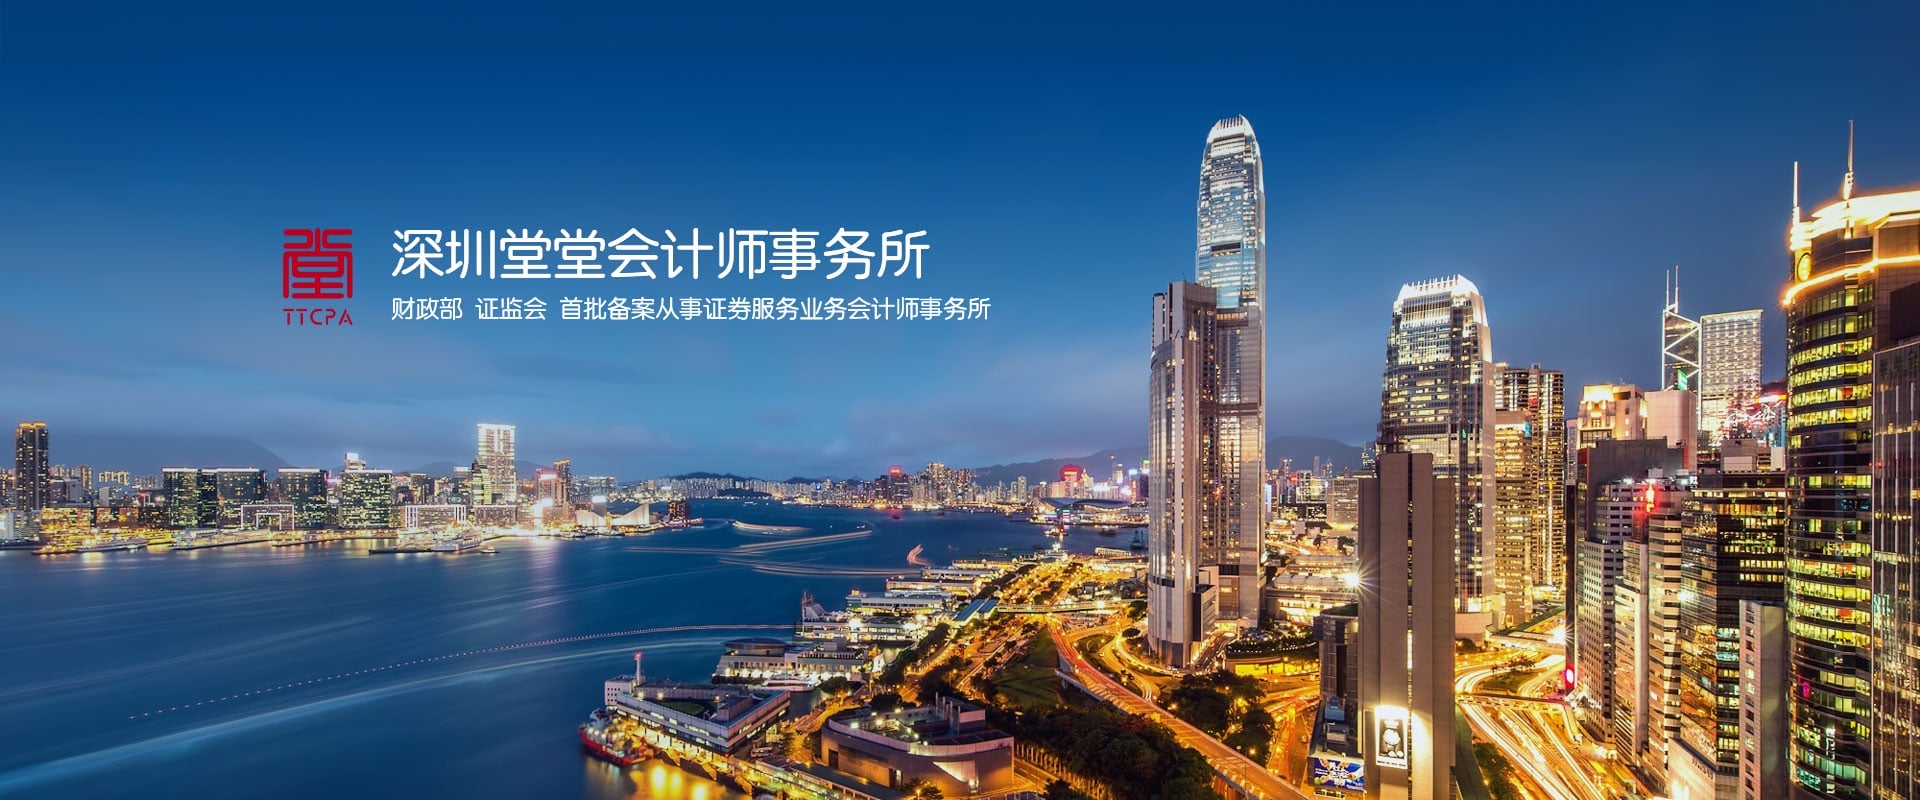 深圳堂堂会计师事务所已经具备证券服务业务资格